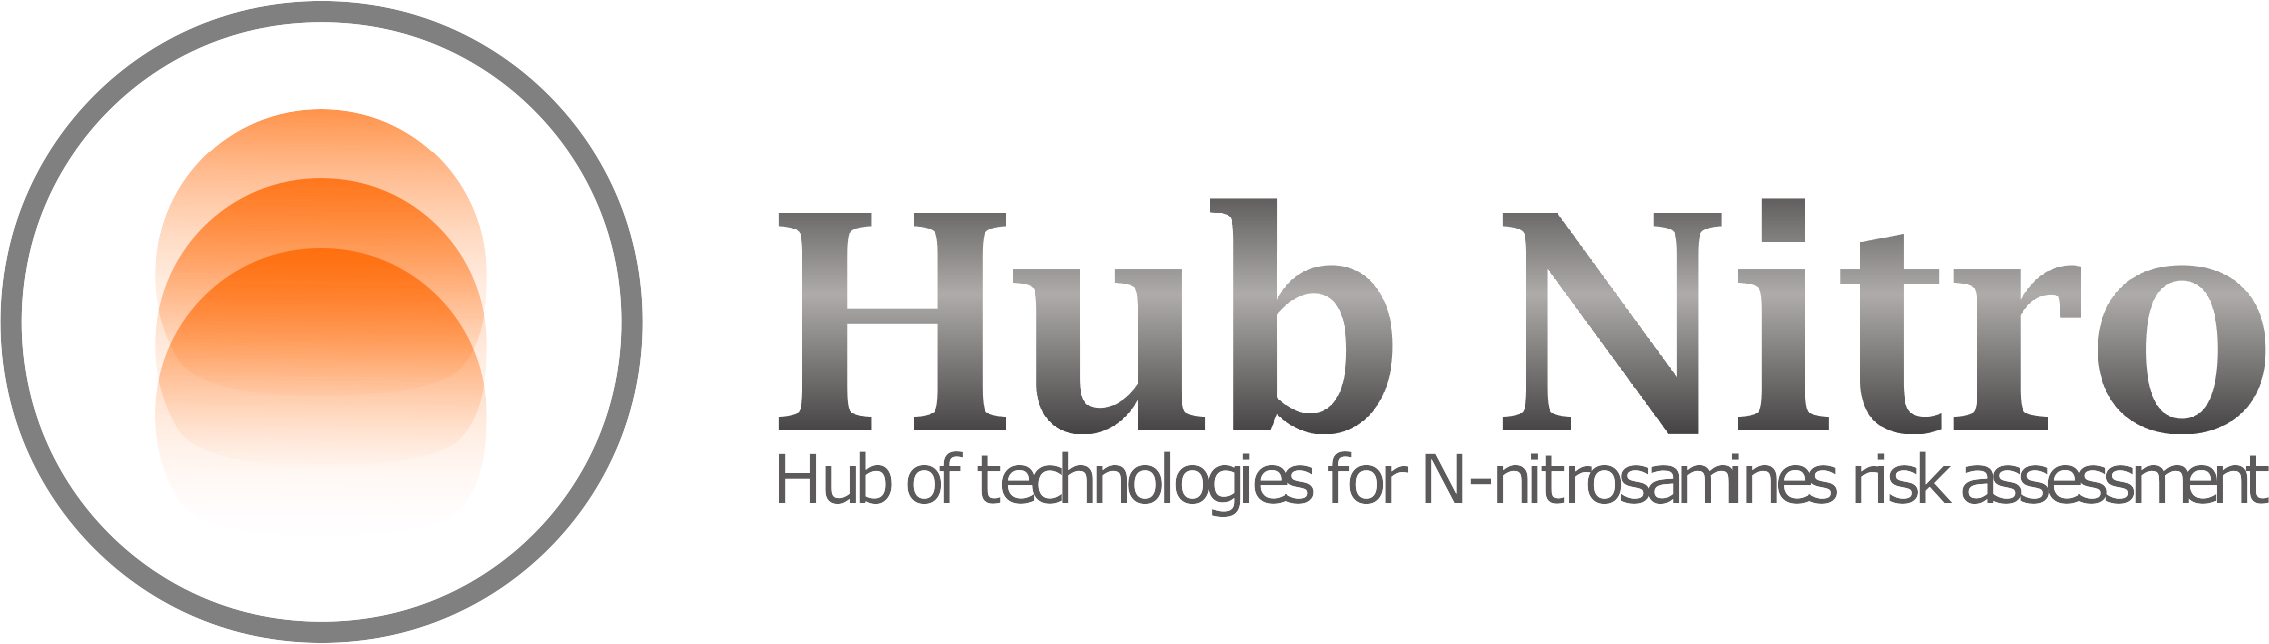 Hub-Nitro logo